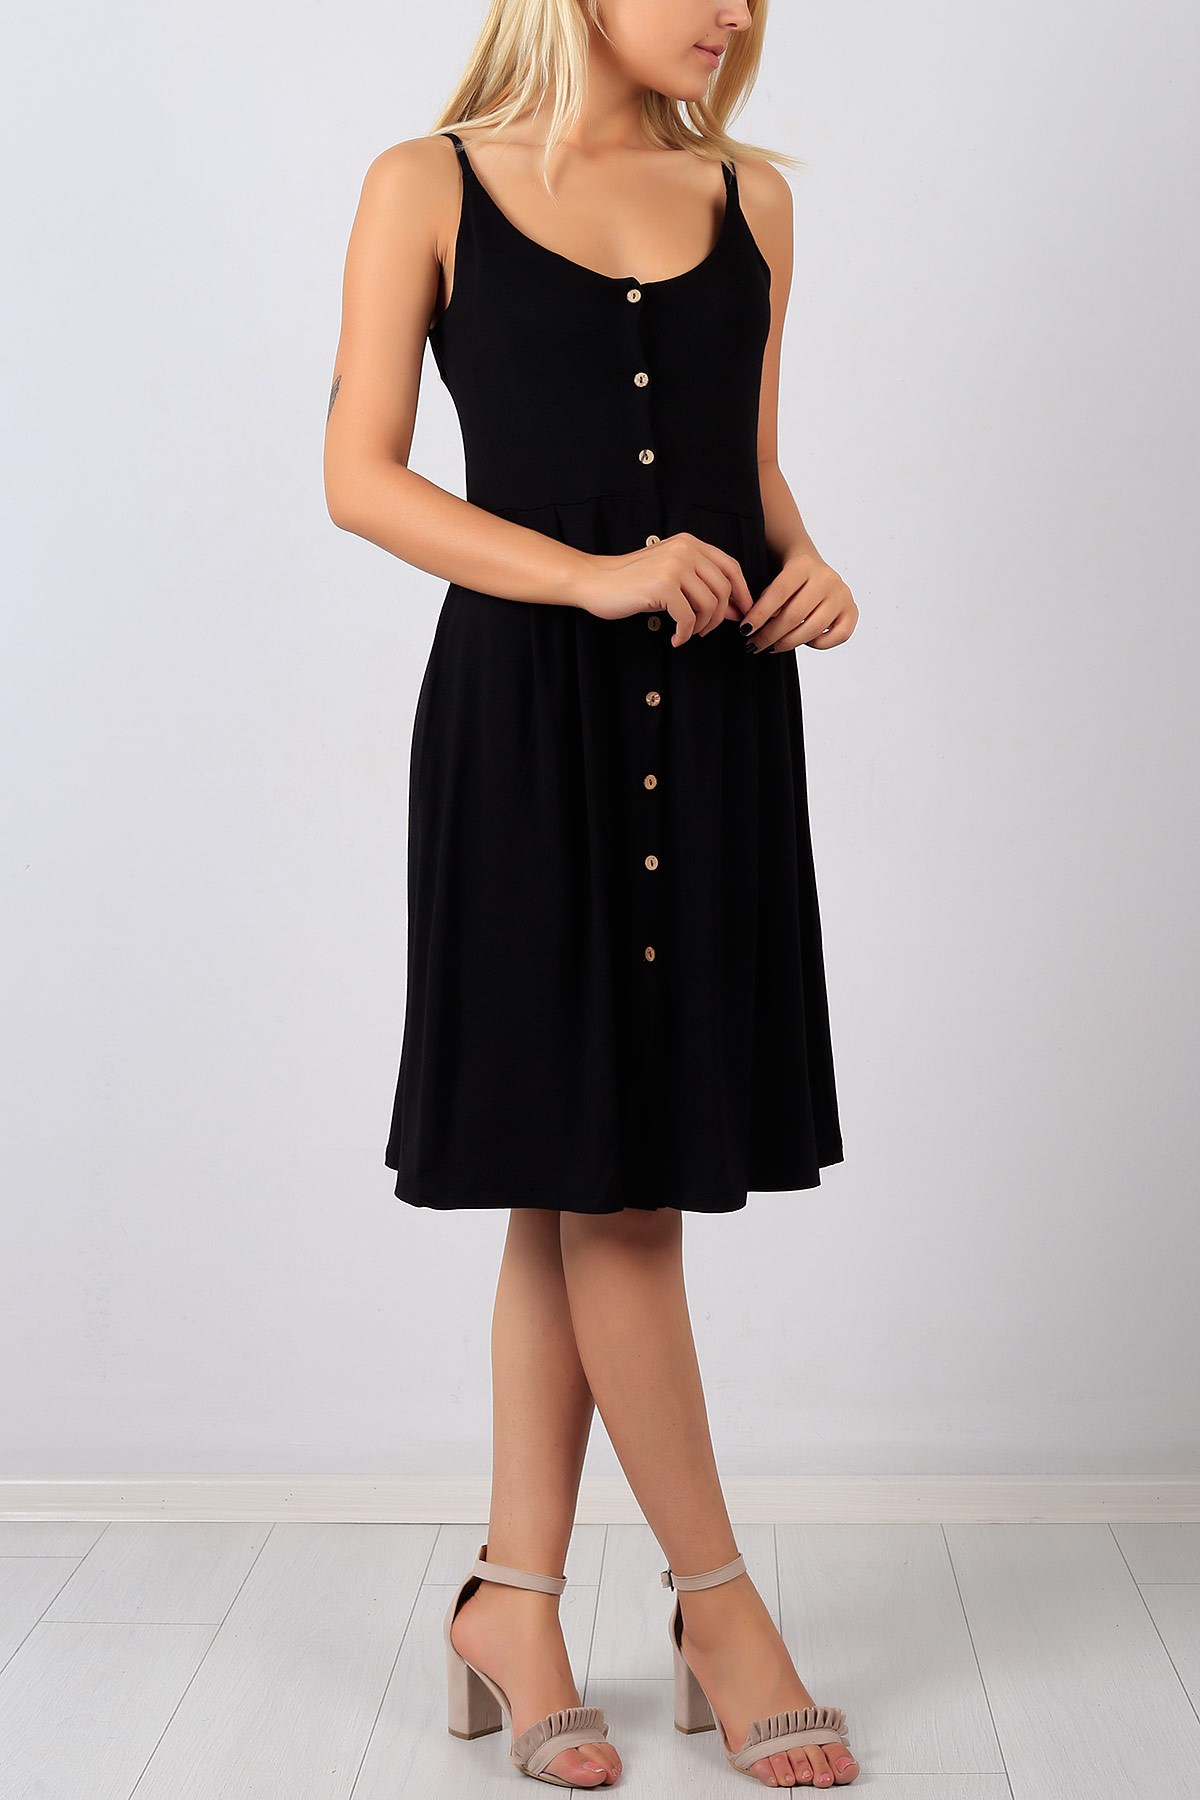 Boydan Düğmeli Askılı Siyah Bayan Elbise 8439B